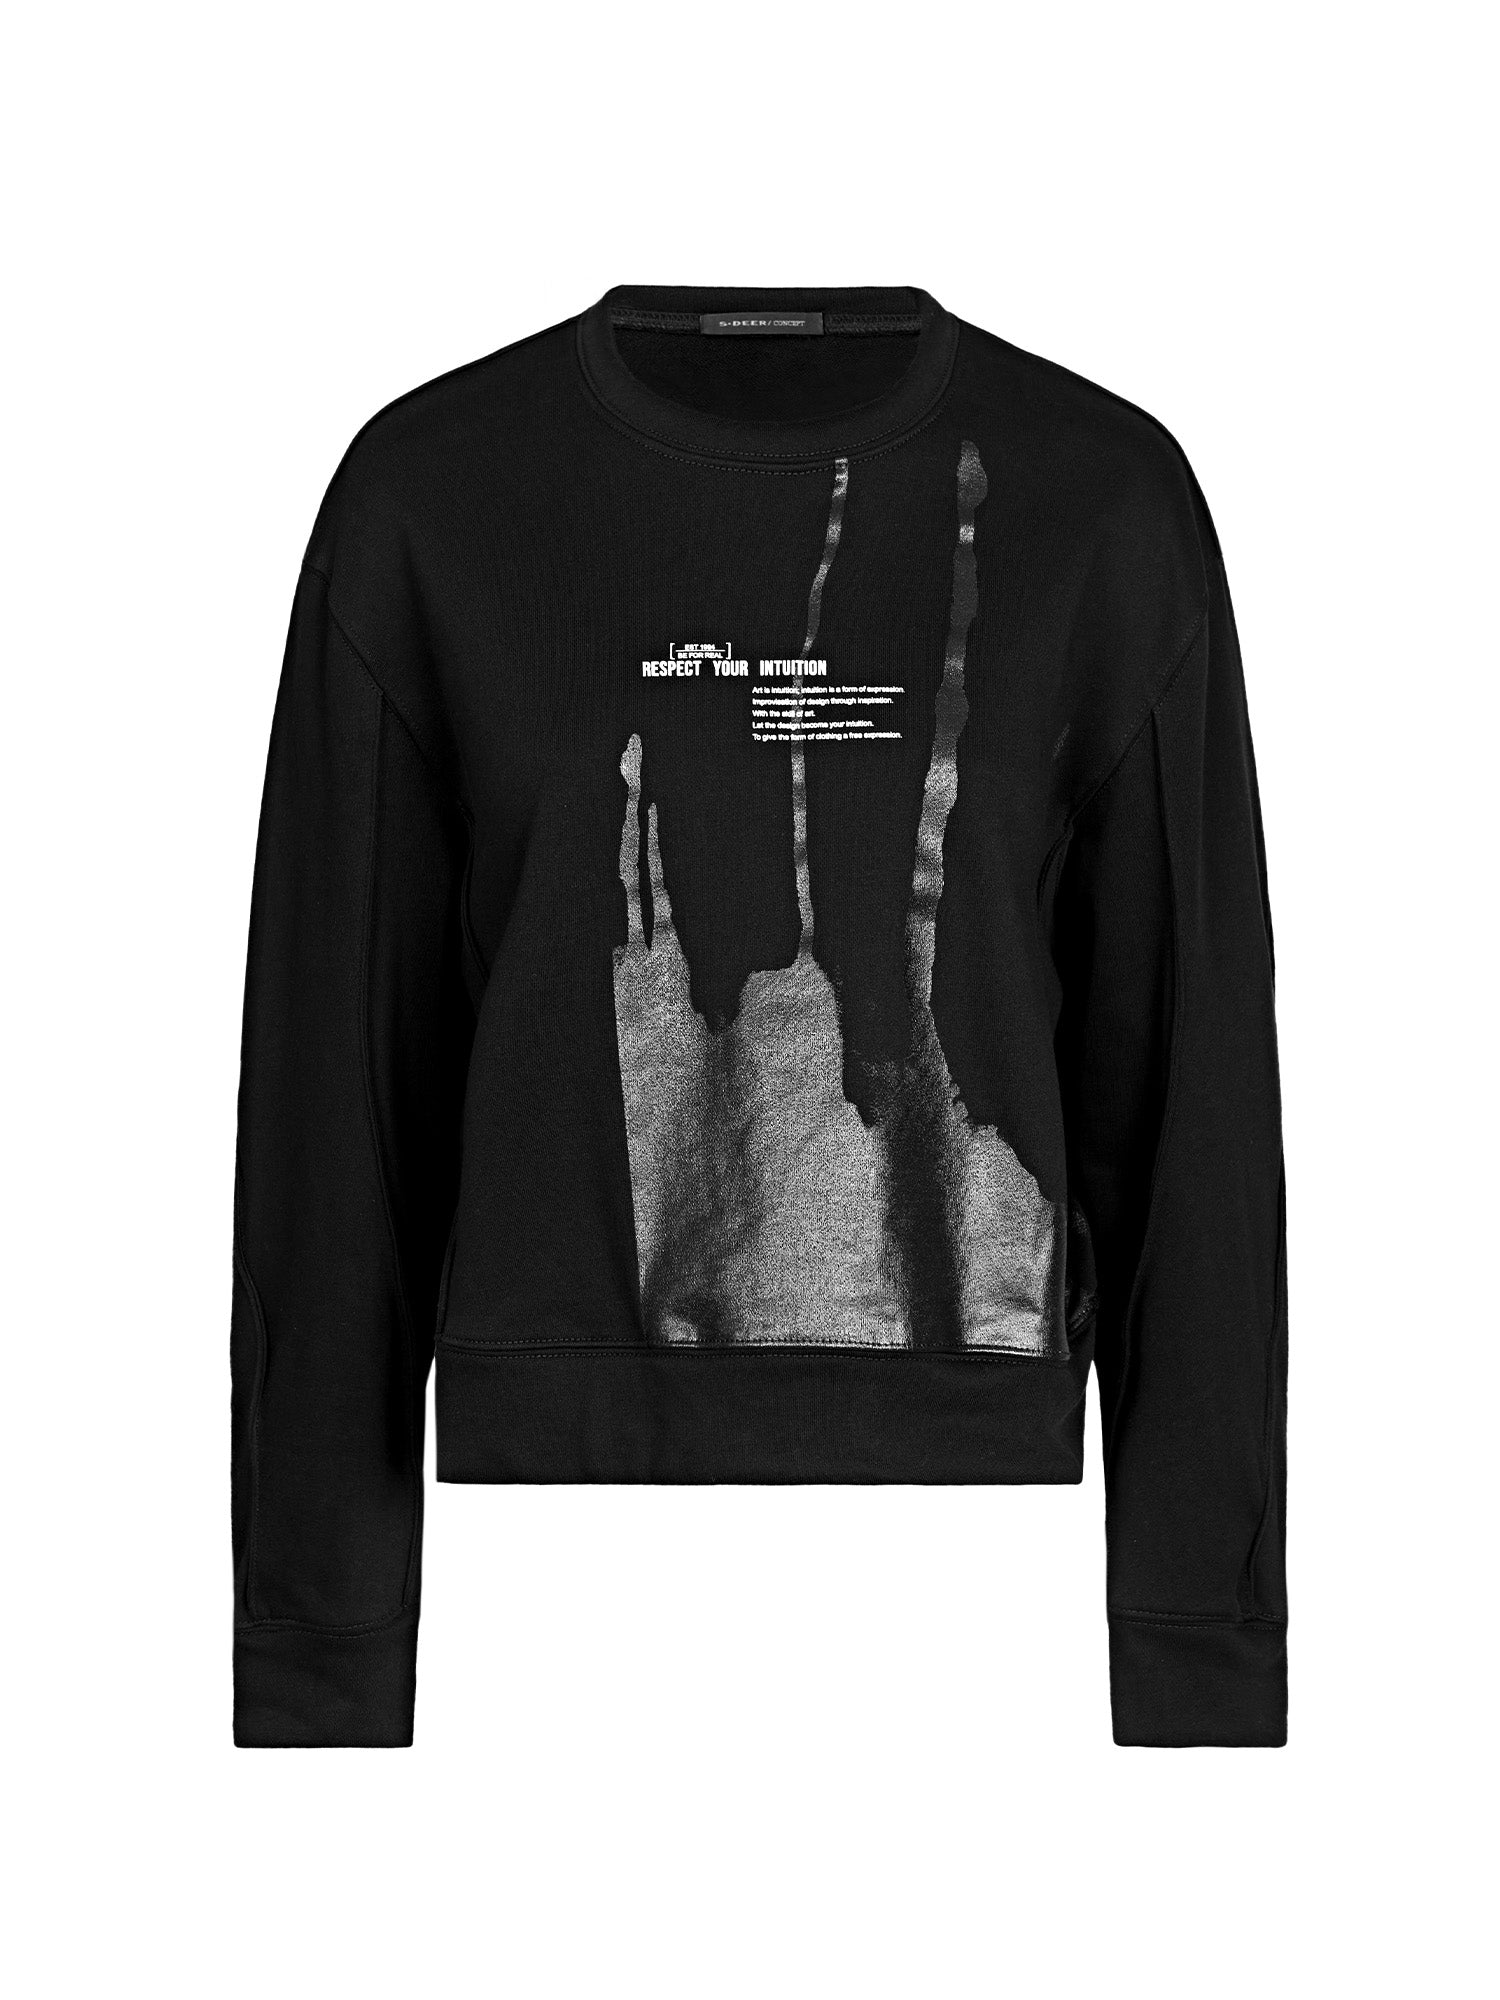 Loose Black Sweatshirt - S·DEER